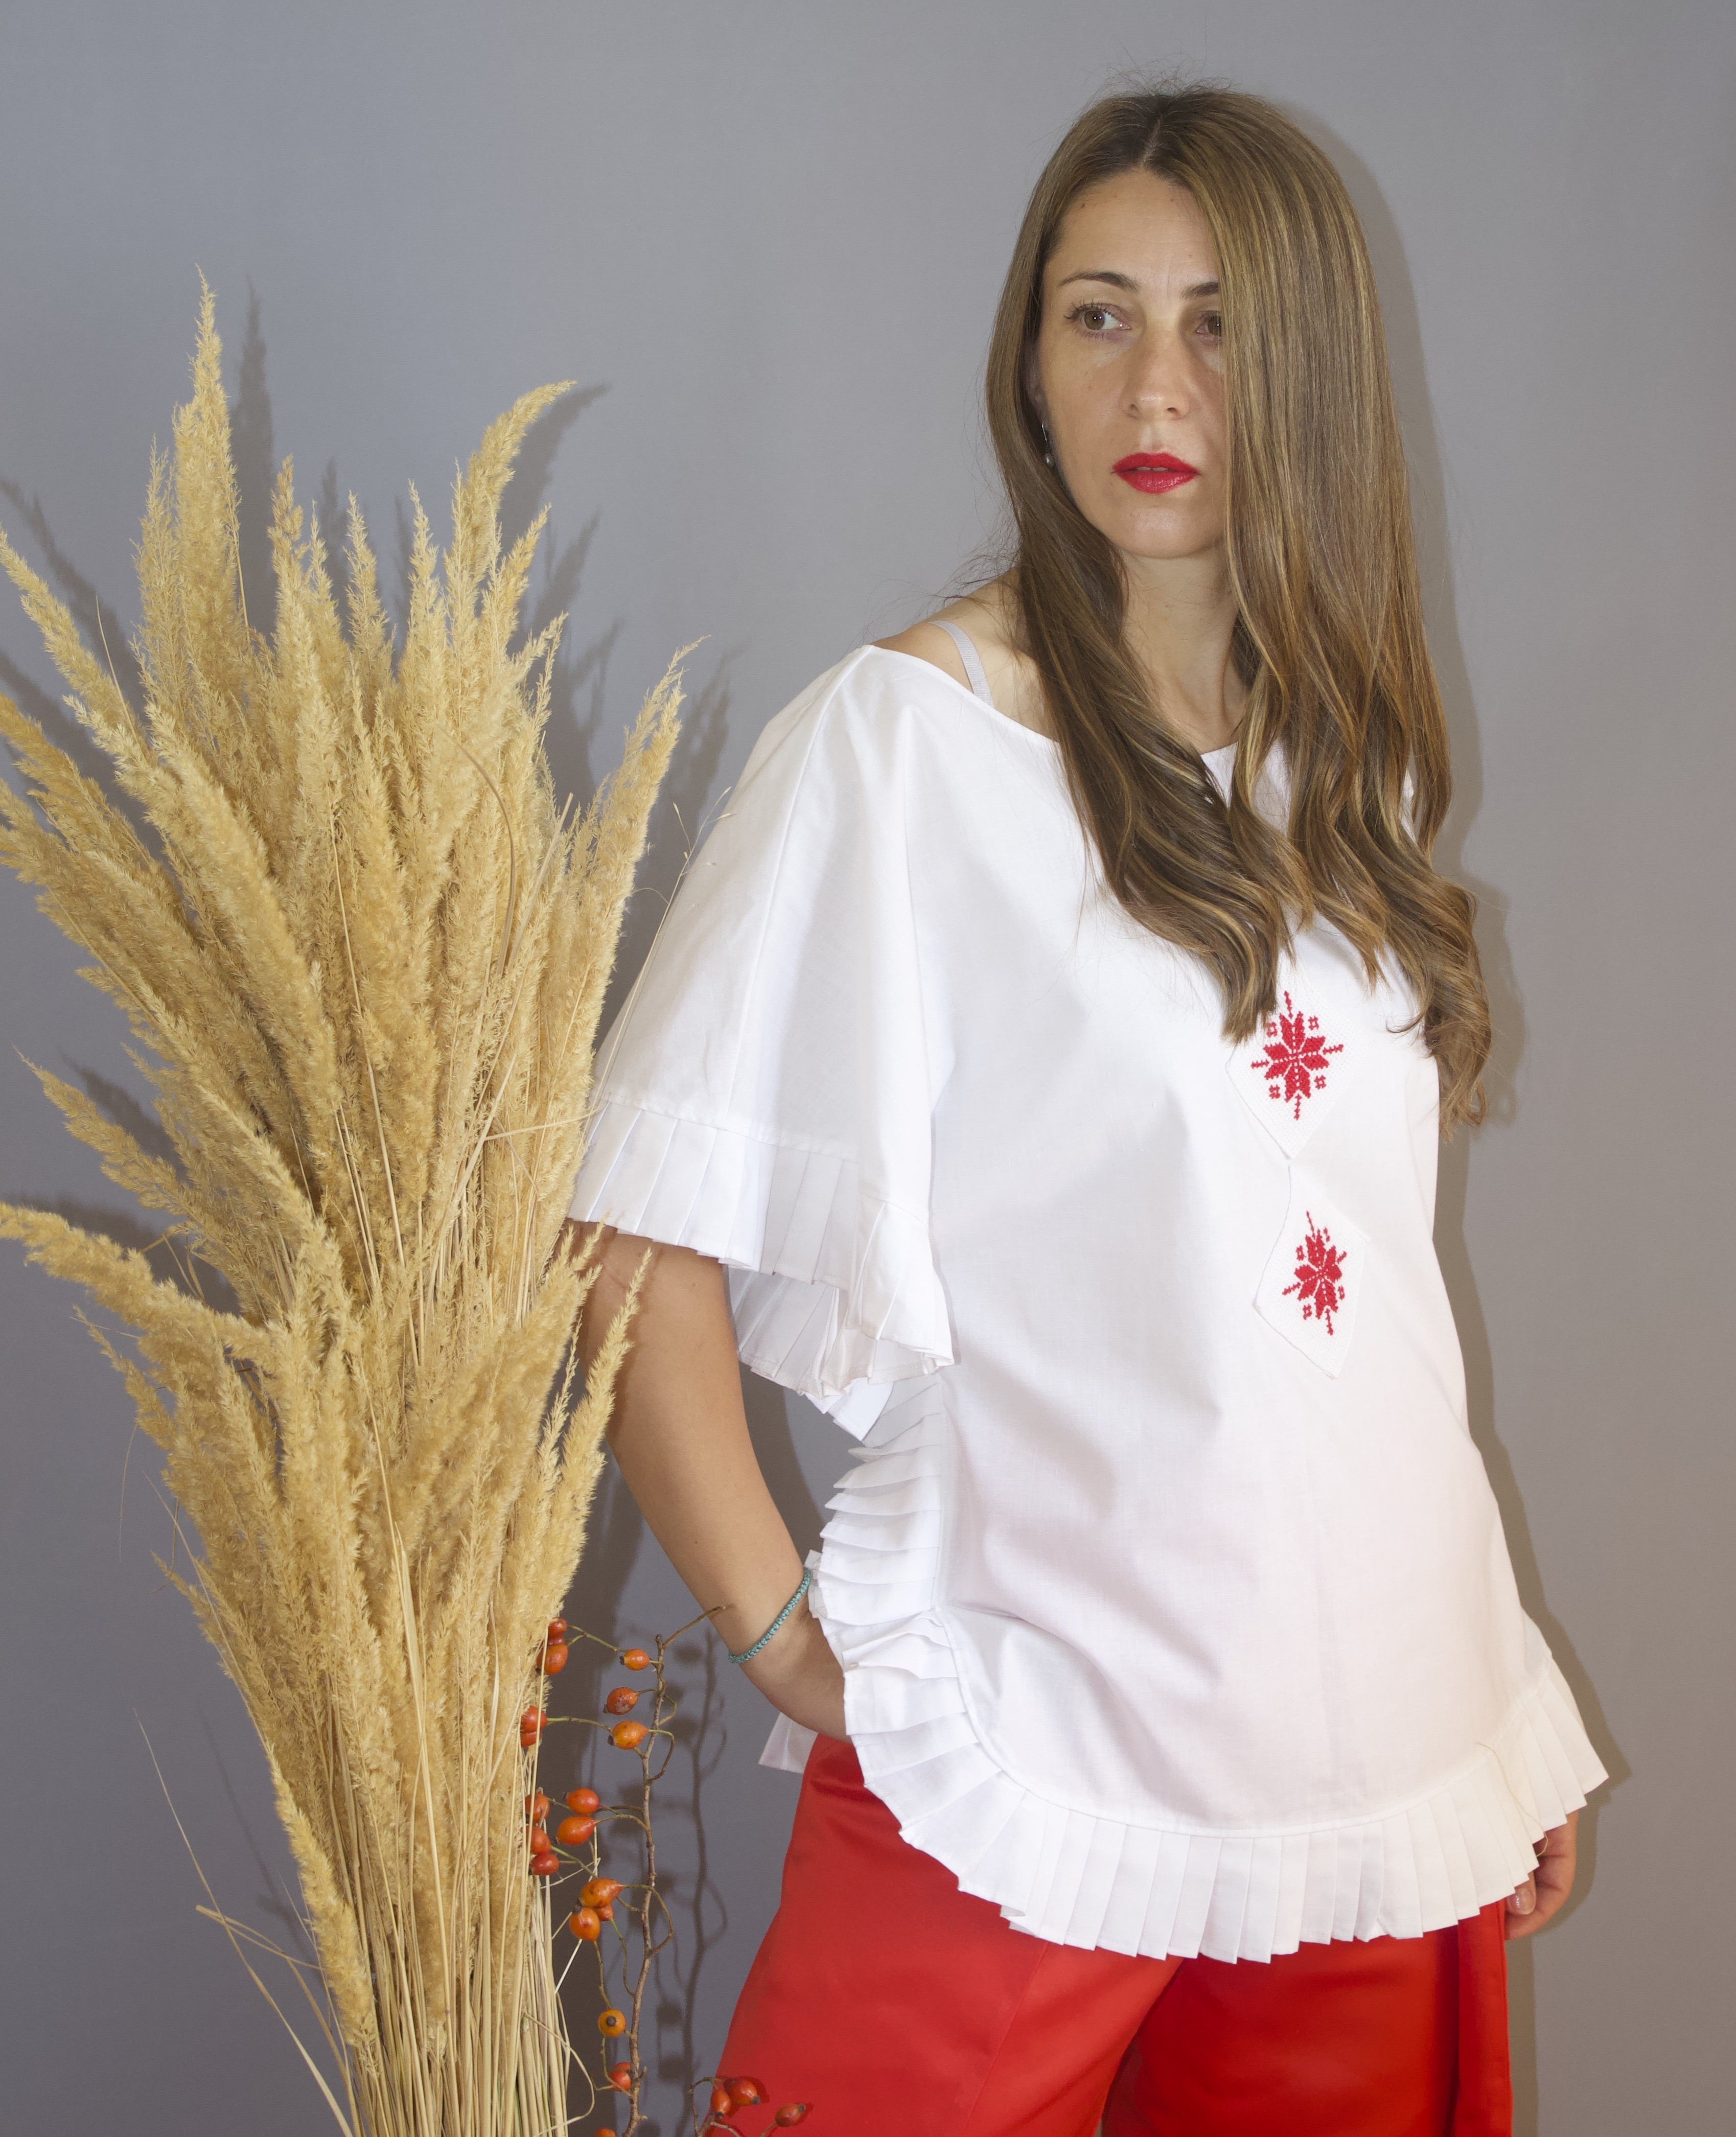 Romanian motif blouse